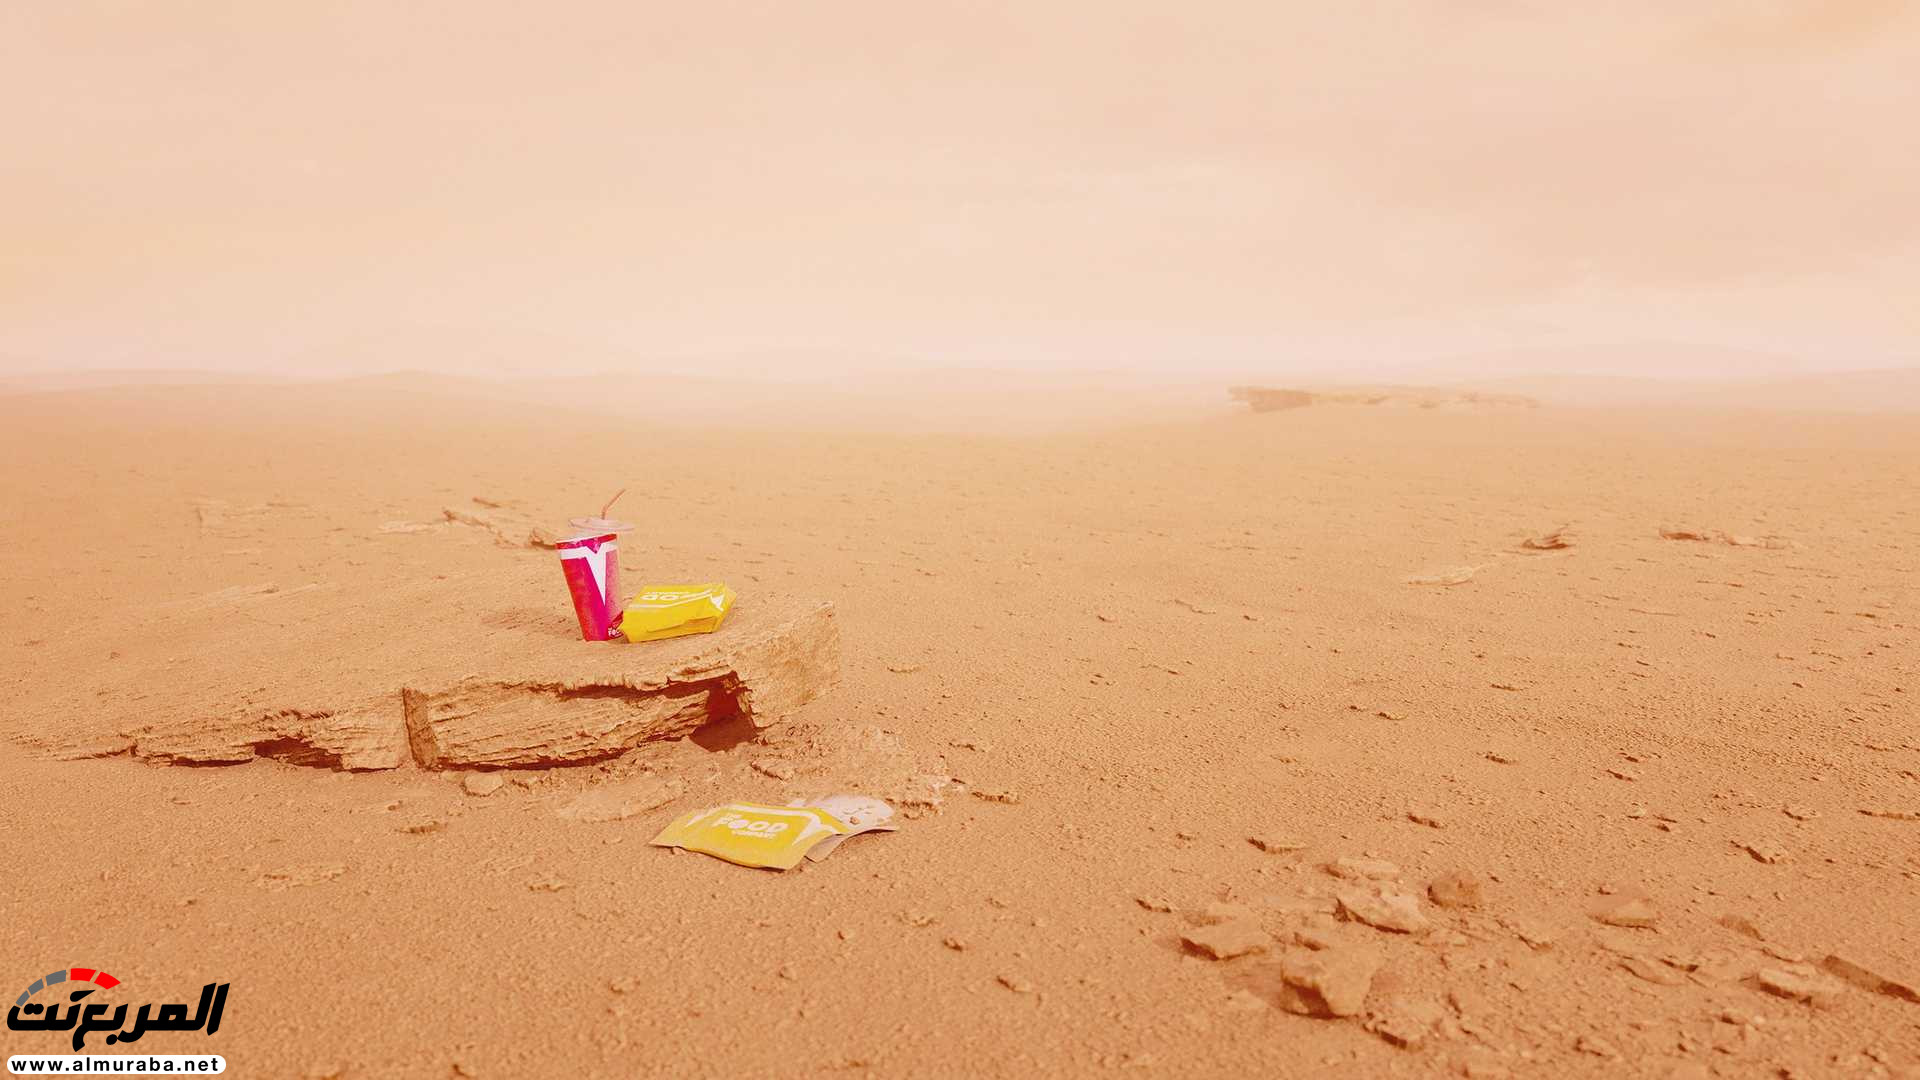 تيسلا رودستر وصلت إلى المريخ في صور تخيلية 18